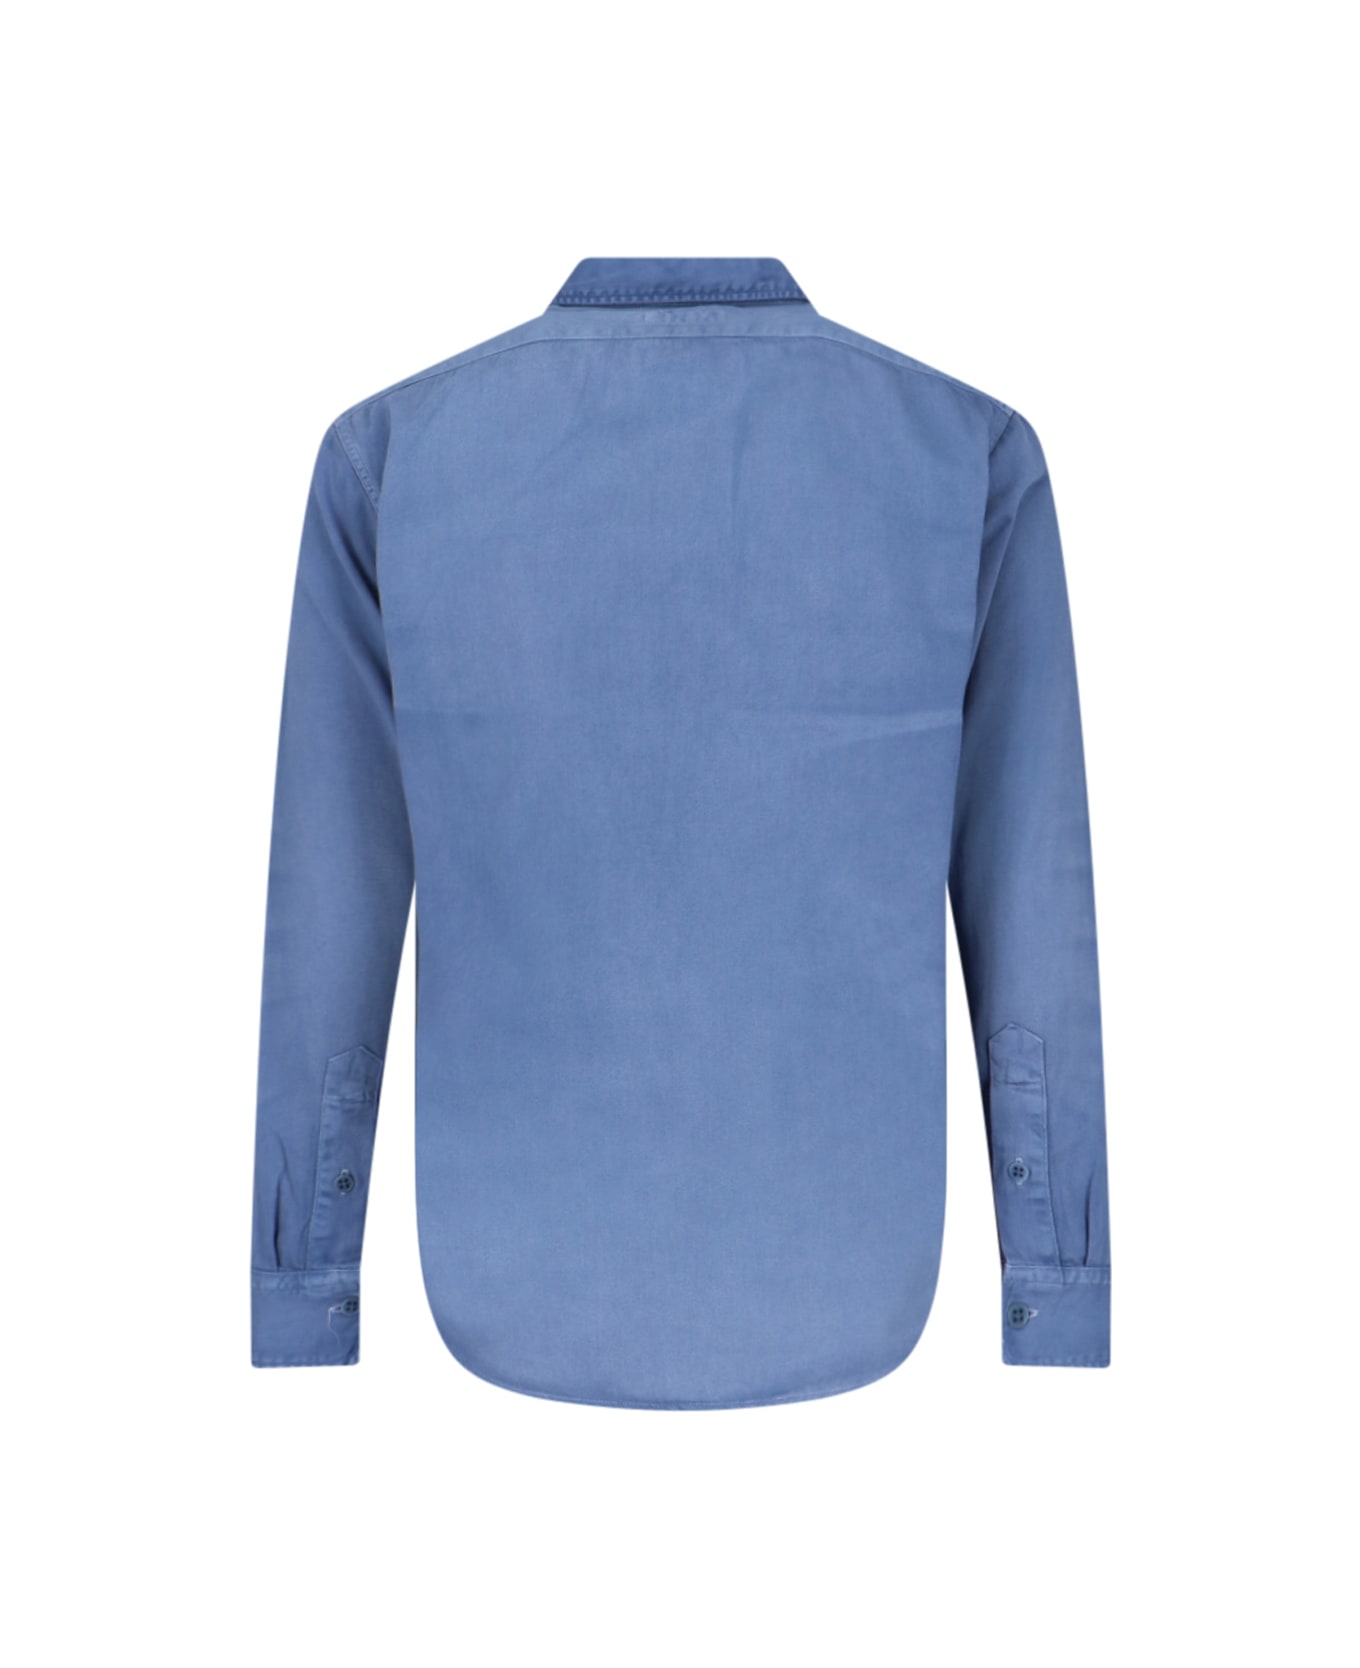 Polo Ralph Lauren Denim Shirt - Light Blue シャツ